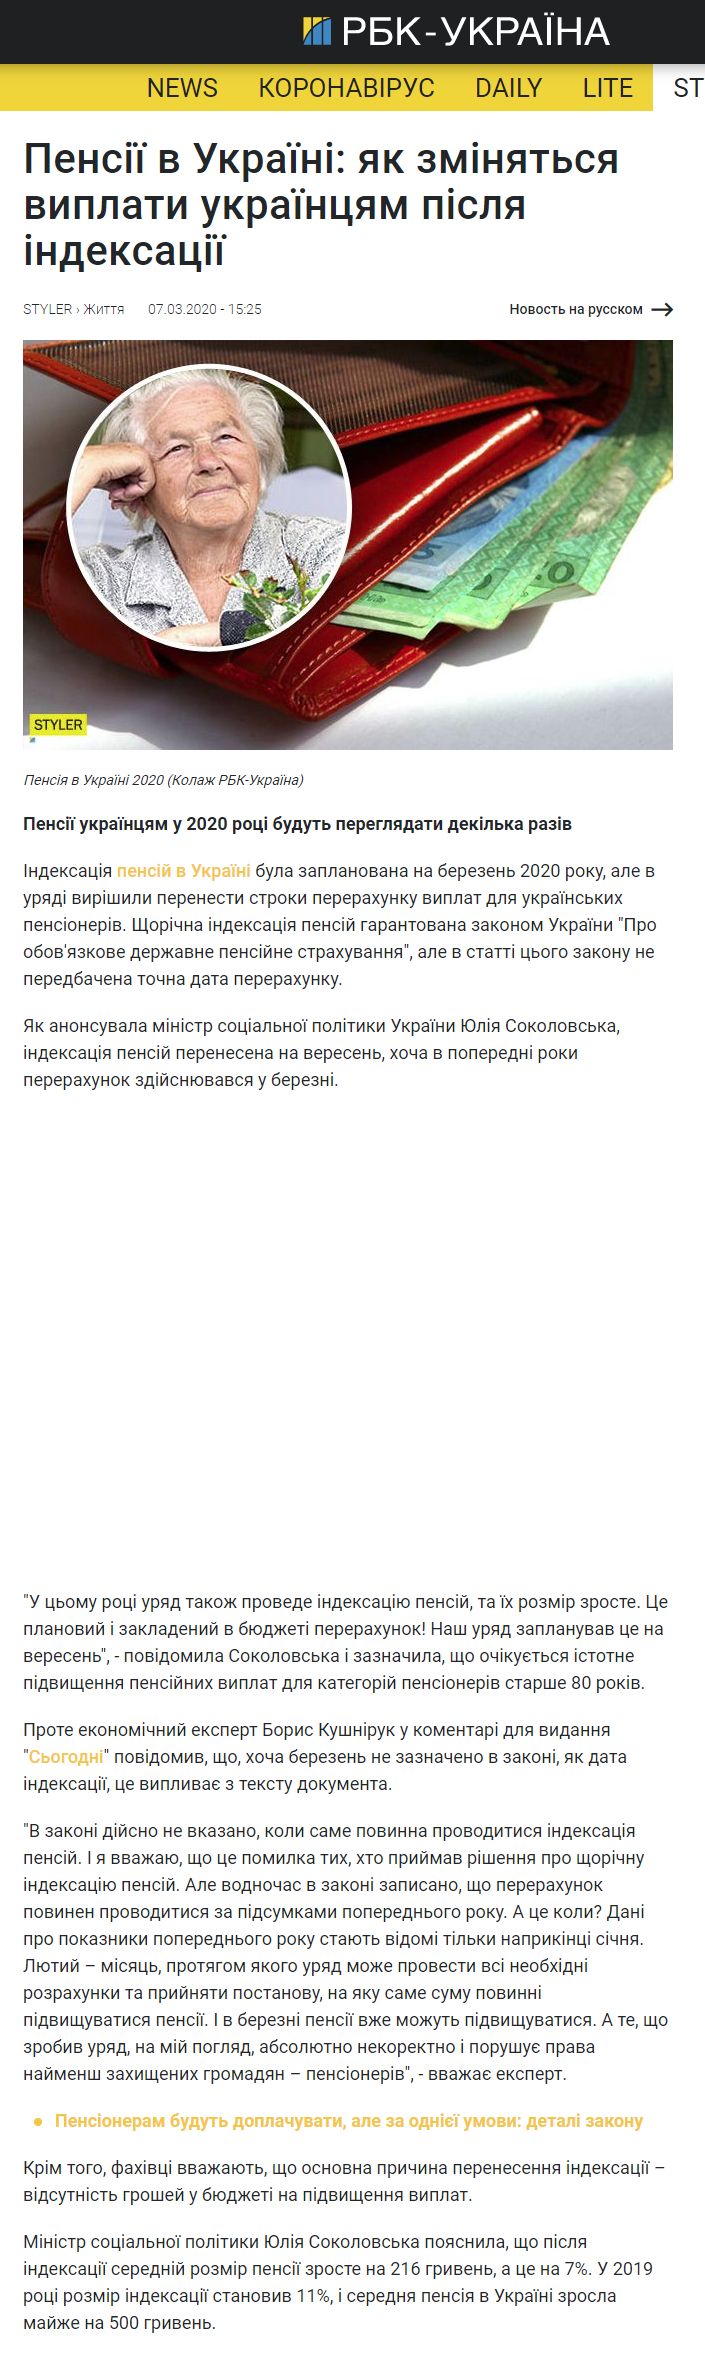 https://www.rbc.ua/ukr/styler/pensii-ukraine-izmenyatsya-vyplaty-ukraintsam-1583325963.html